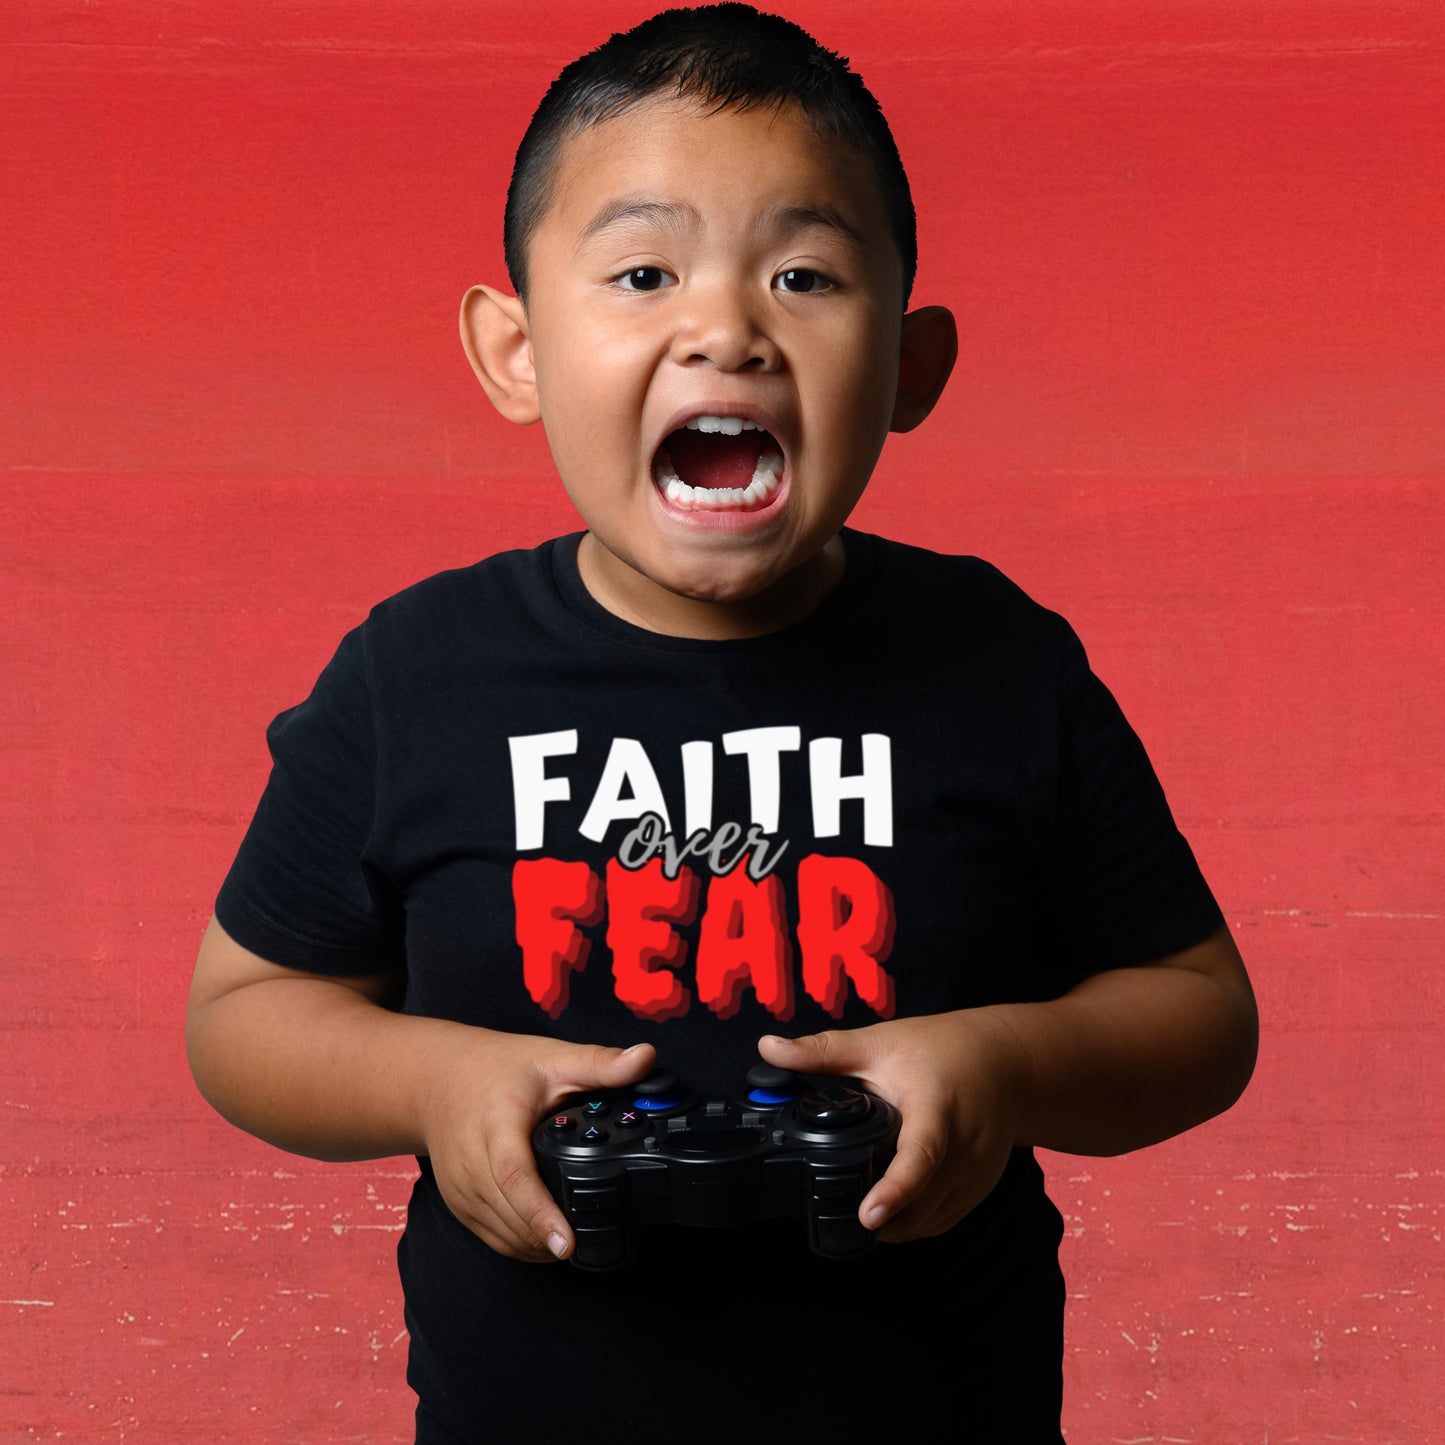 FAITH OVER FEAR Premium Kids T-Shirt